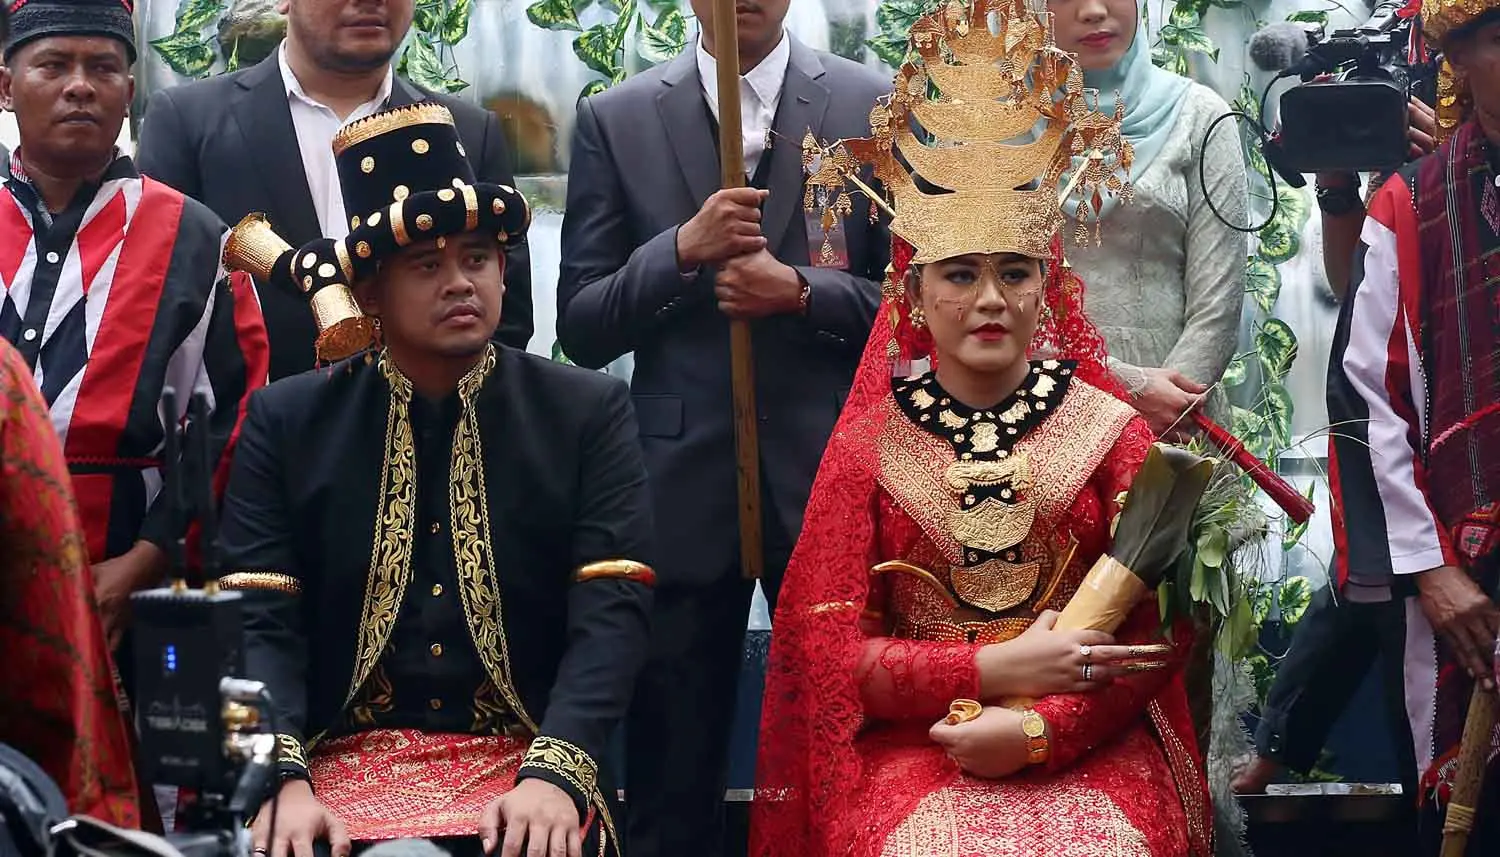 Rangkaian prosesi adat telah dijalani dalam pesta pernikahan Kahiyang Ayu dan Bobby Nasution yang berlangsung di Medan. Acara adat Mandailing Sumatera Utara digelar sejak Jumat (24/11) pagi. (Deki Prayoga/Bintang.com)